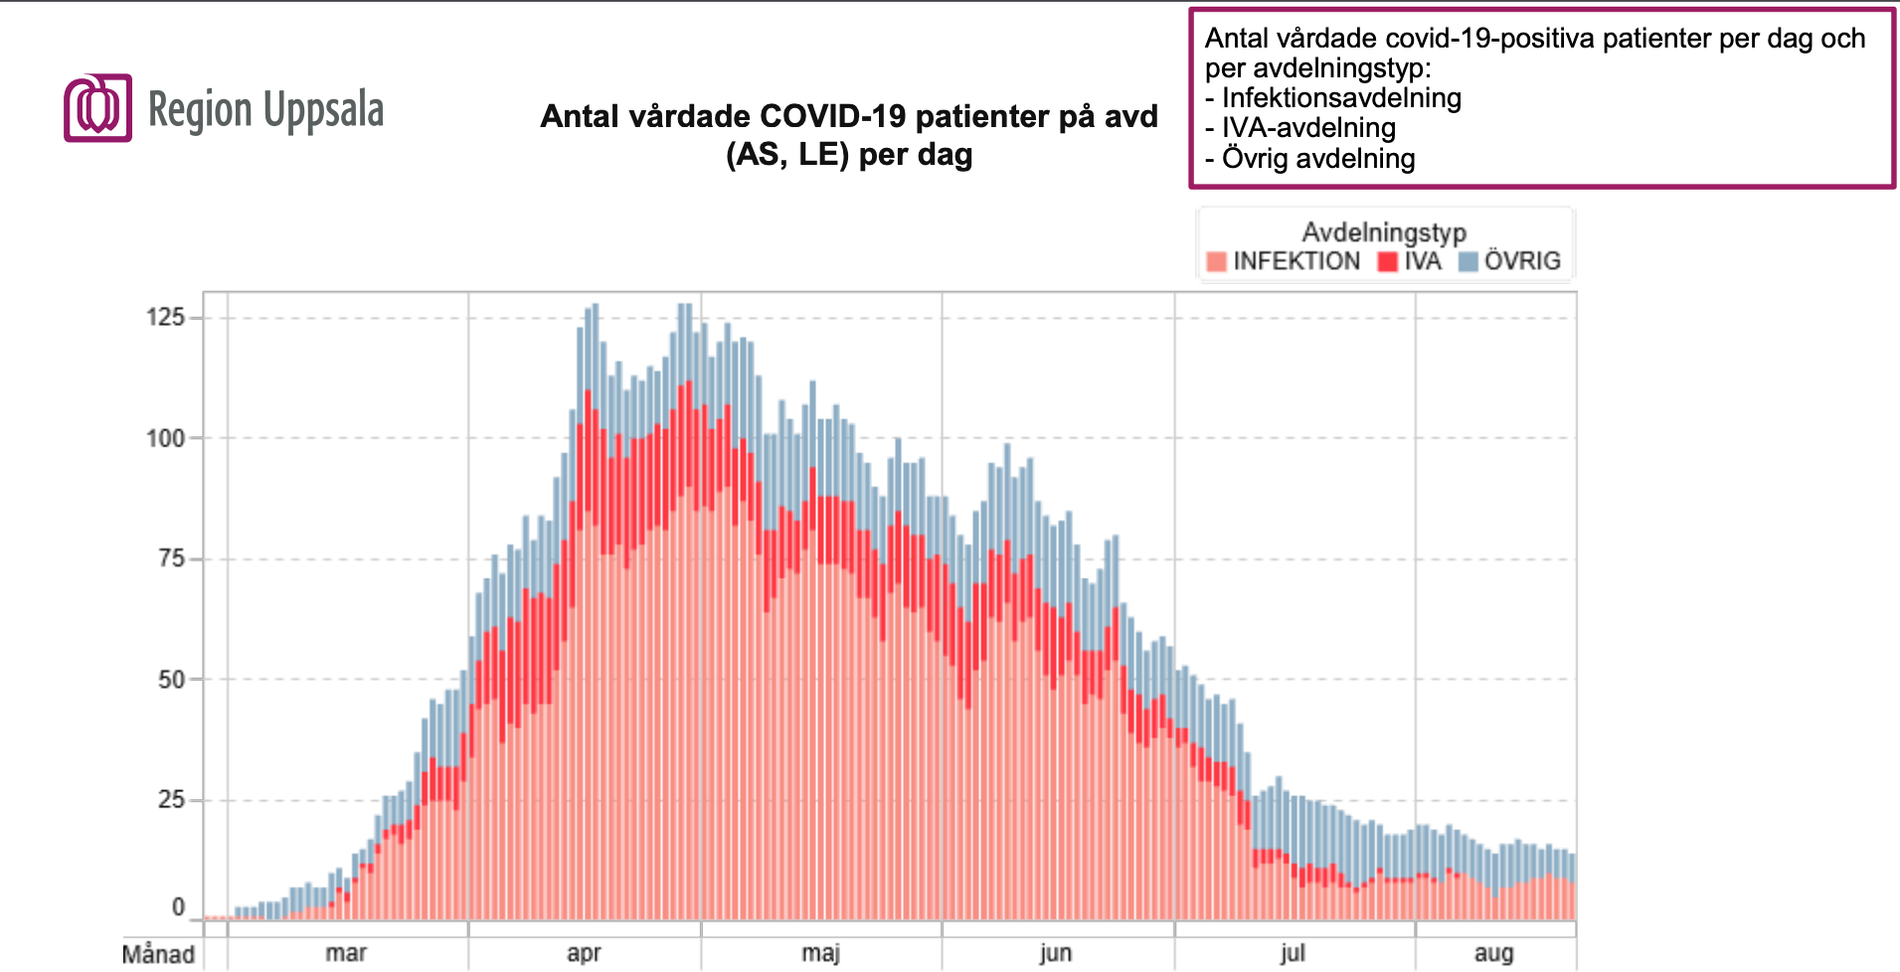 Antal vårdade covid-19-positiva patienter per dag och per avdelningstyp (infektionsavdelning, iva-avdelningen och övrig avdelning) i Region Uppsala.